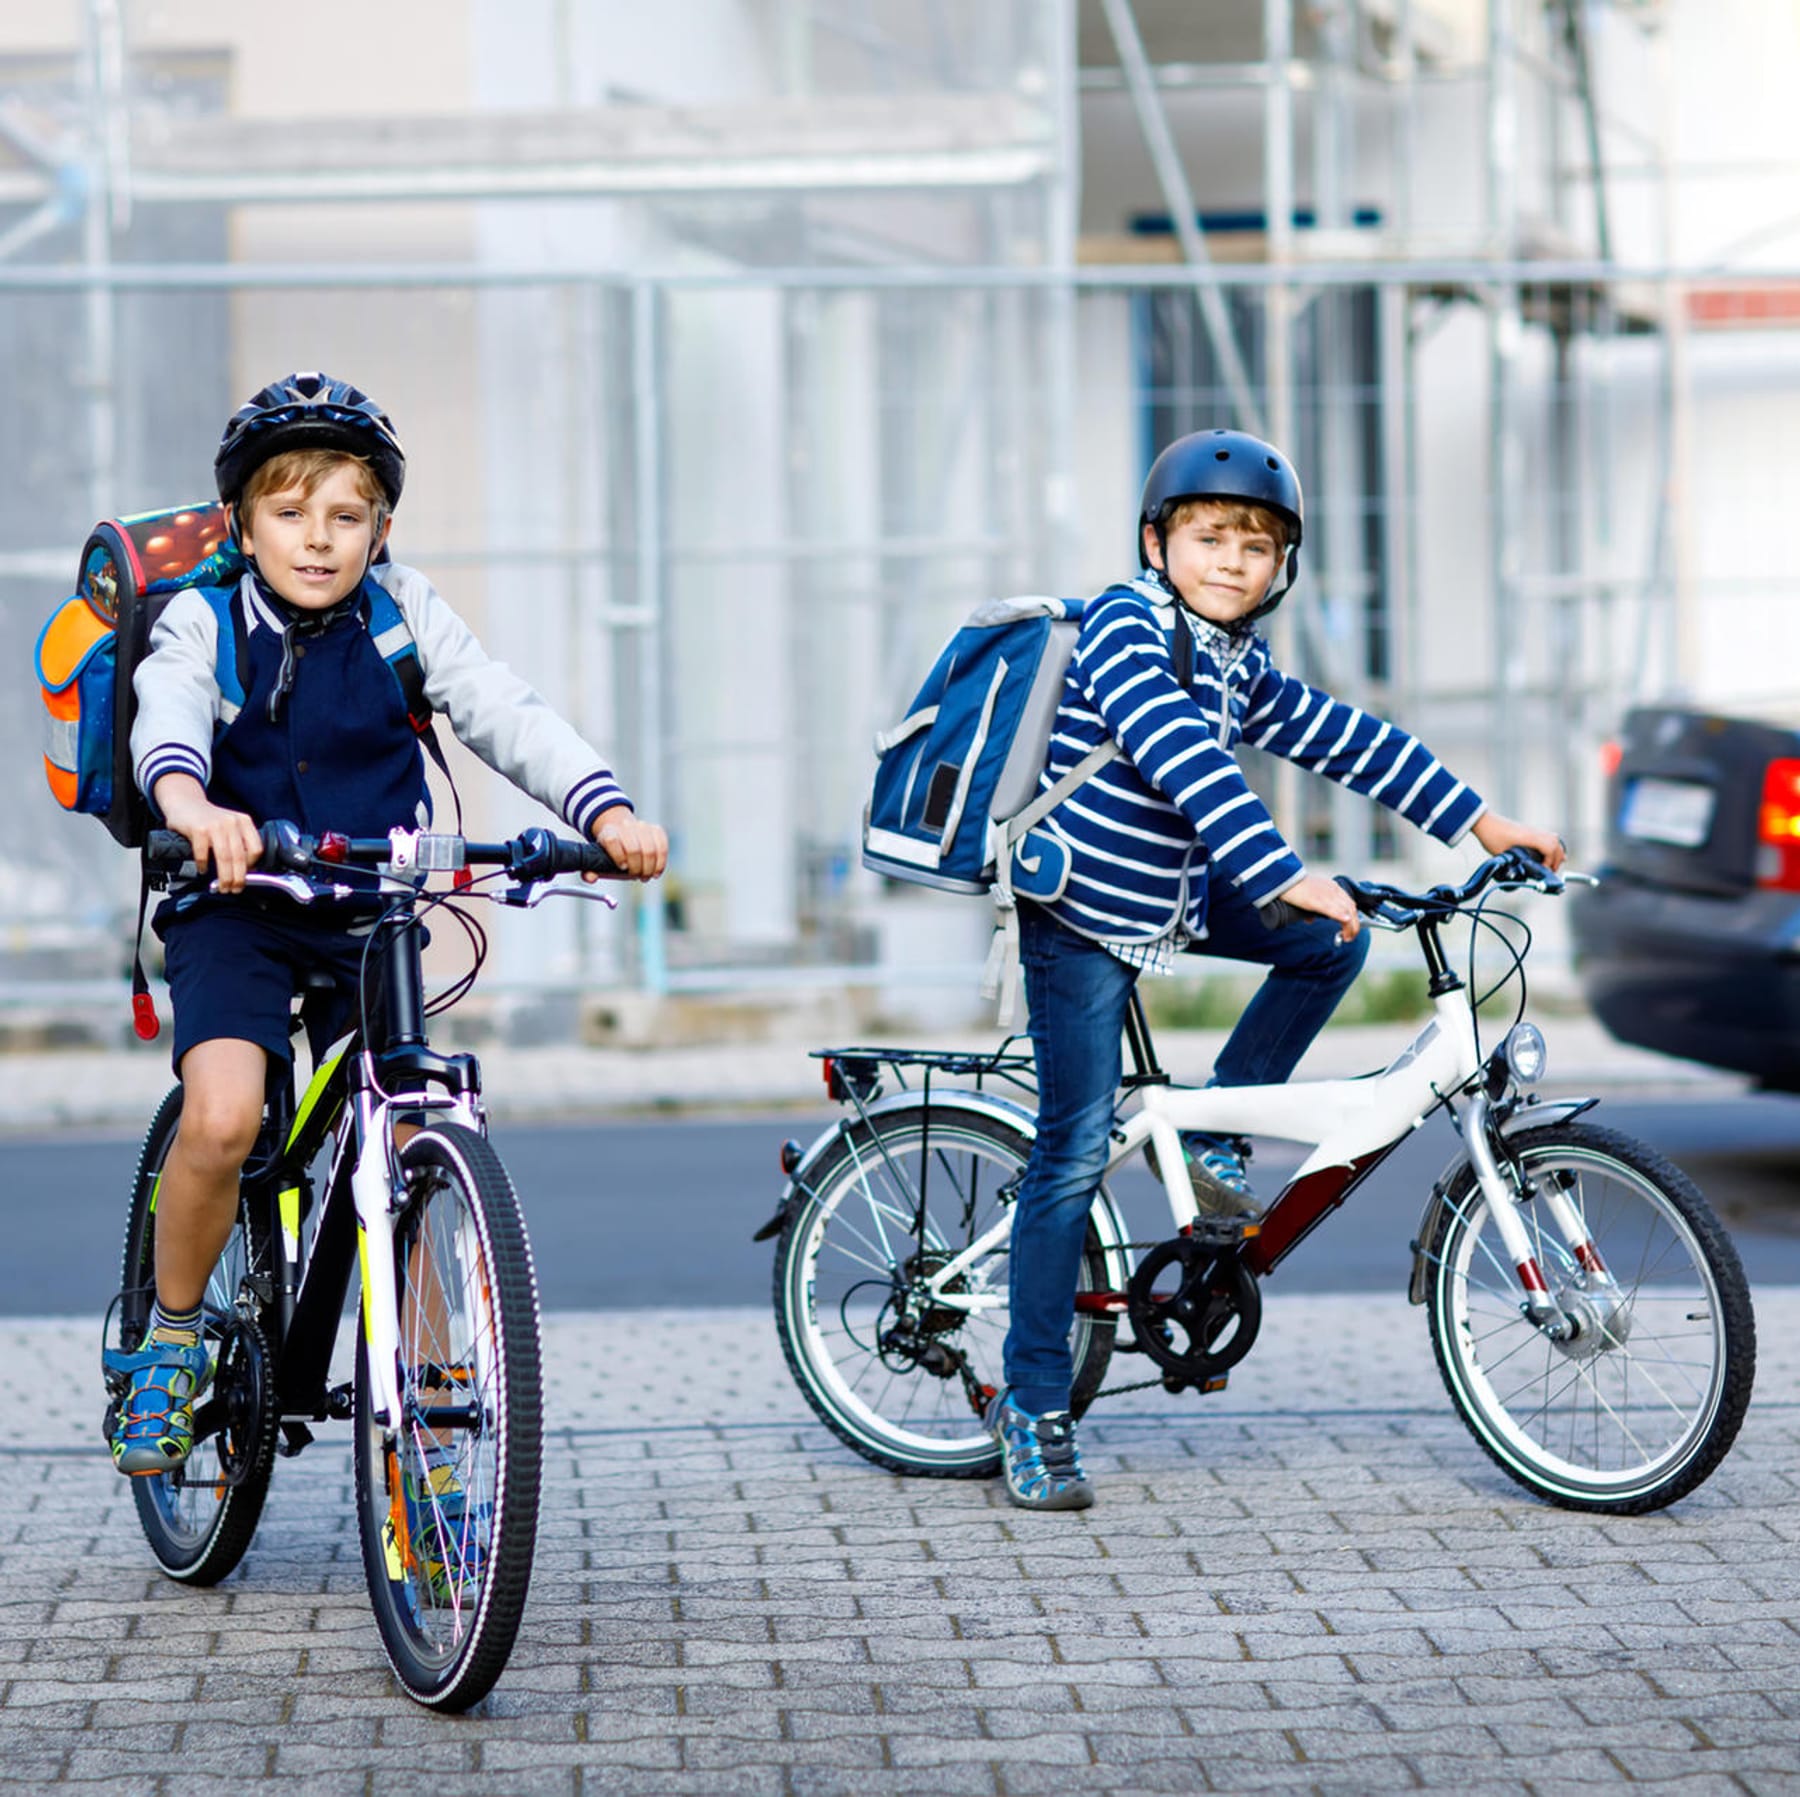 Kinderfahrrad-Test: Diese Fahrräder für Kinder überzeugen Stiftung Warentest